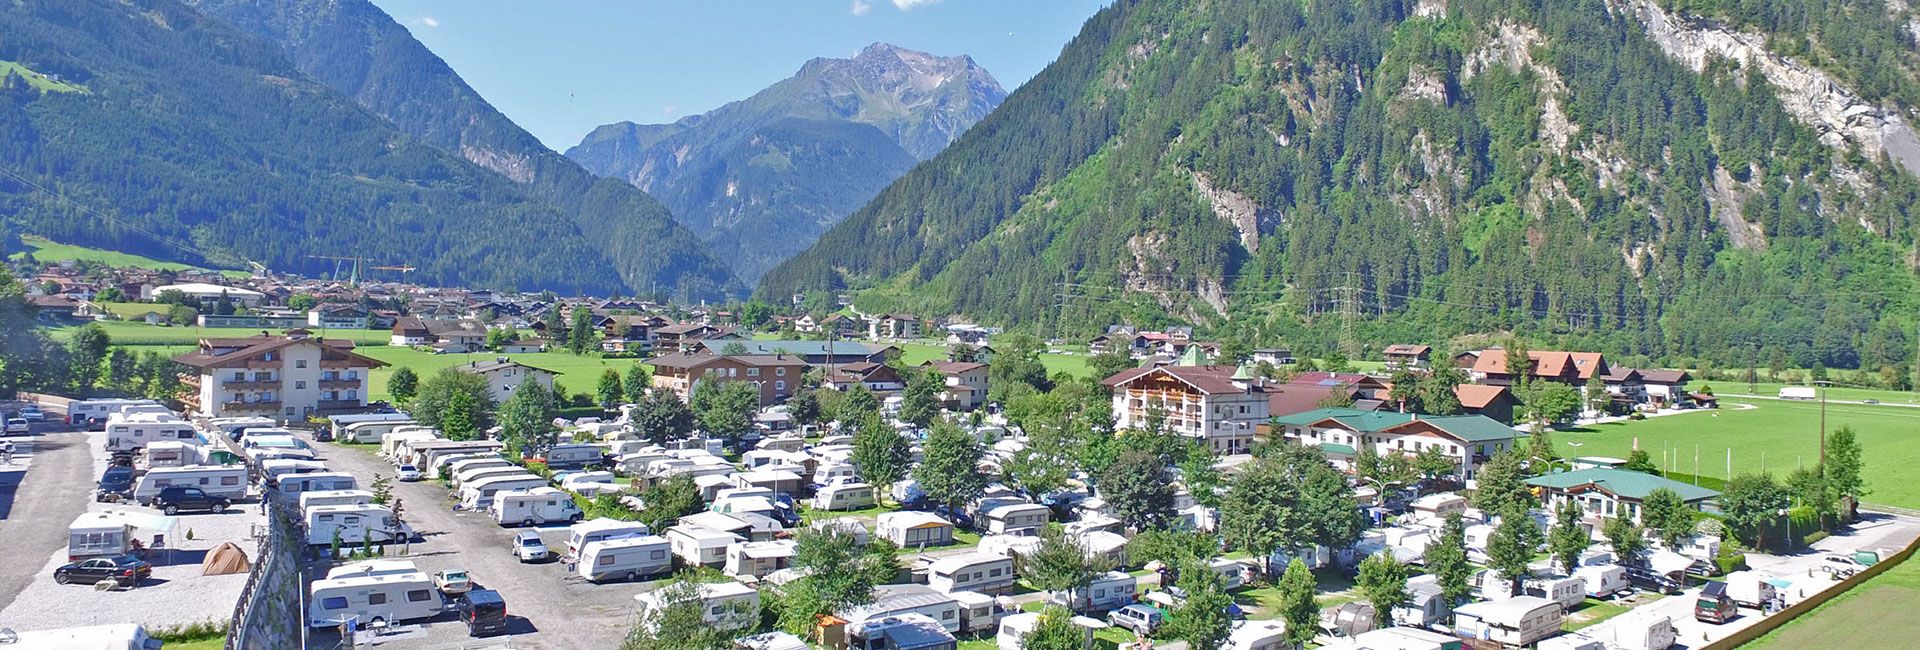 Campingplatz Mayrhofen im Sommer